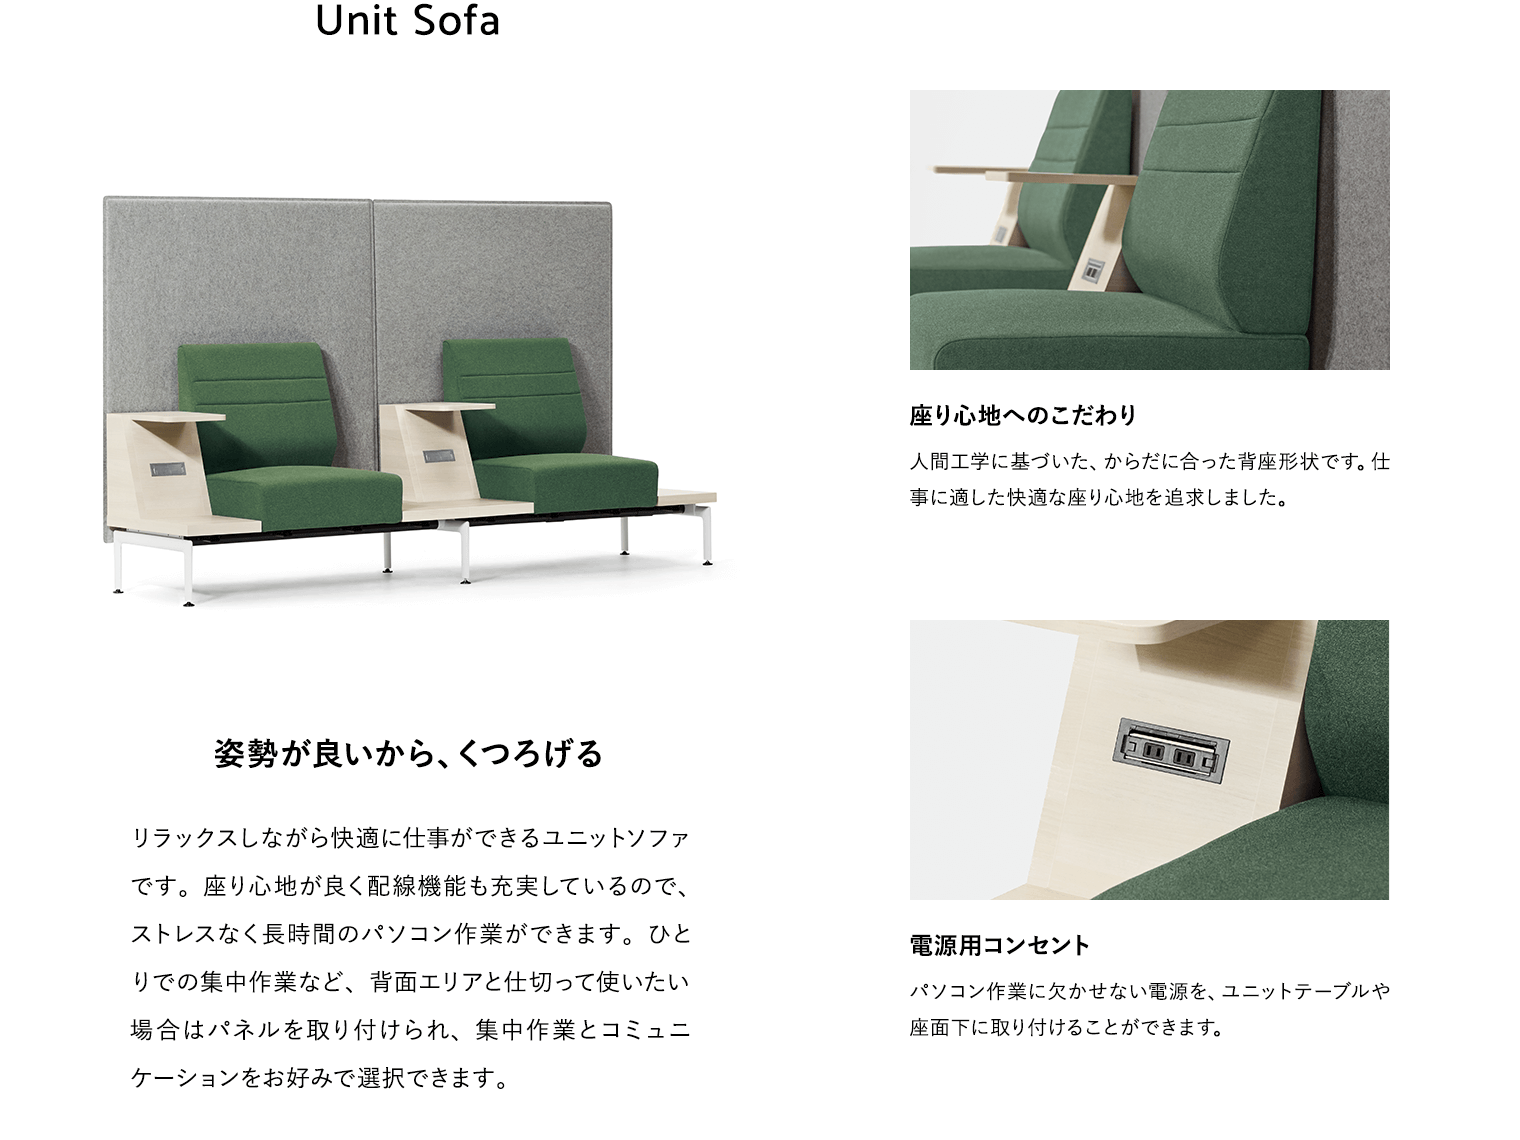 Unit Sofa